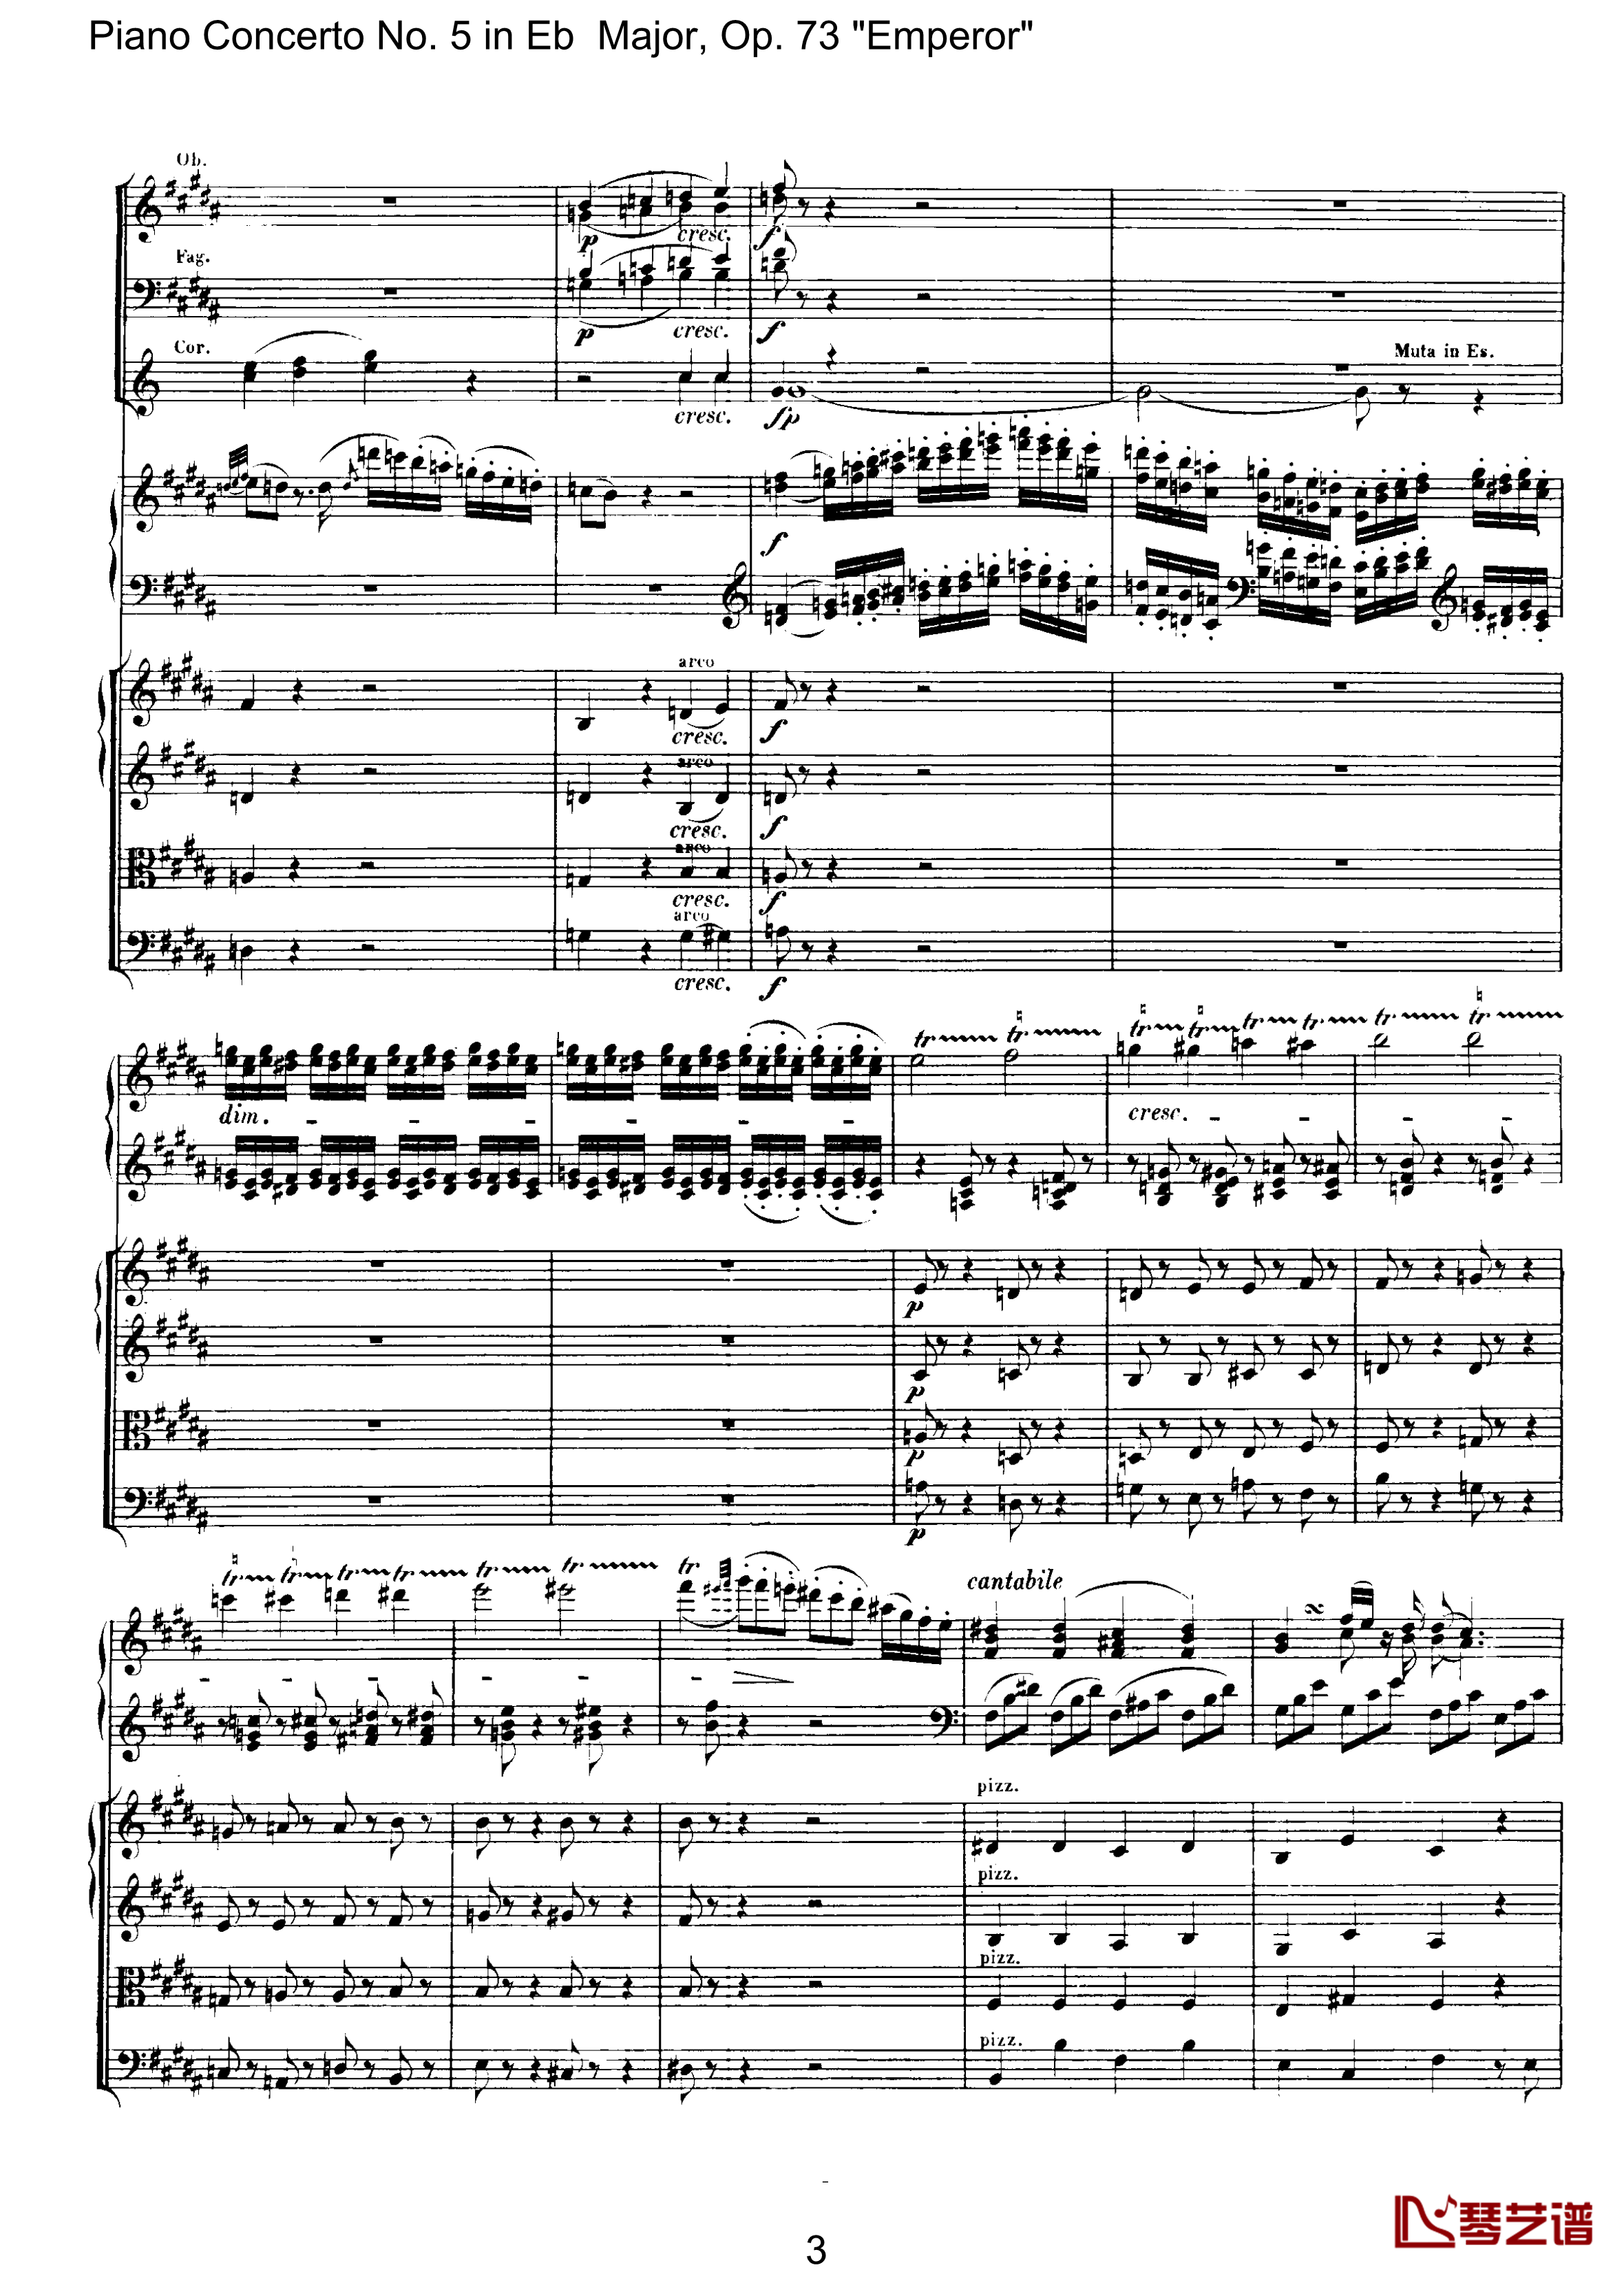 皇帝第二乐章钢琴谱-贝多芬-总谱-第五钢琴协奏曲beethoven3